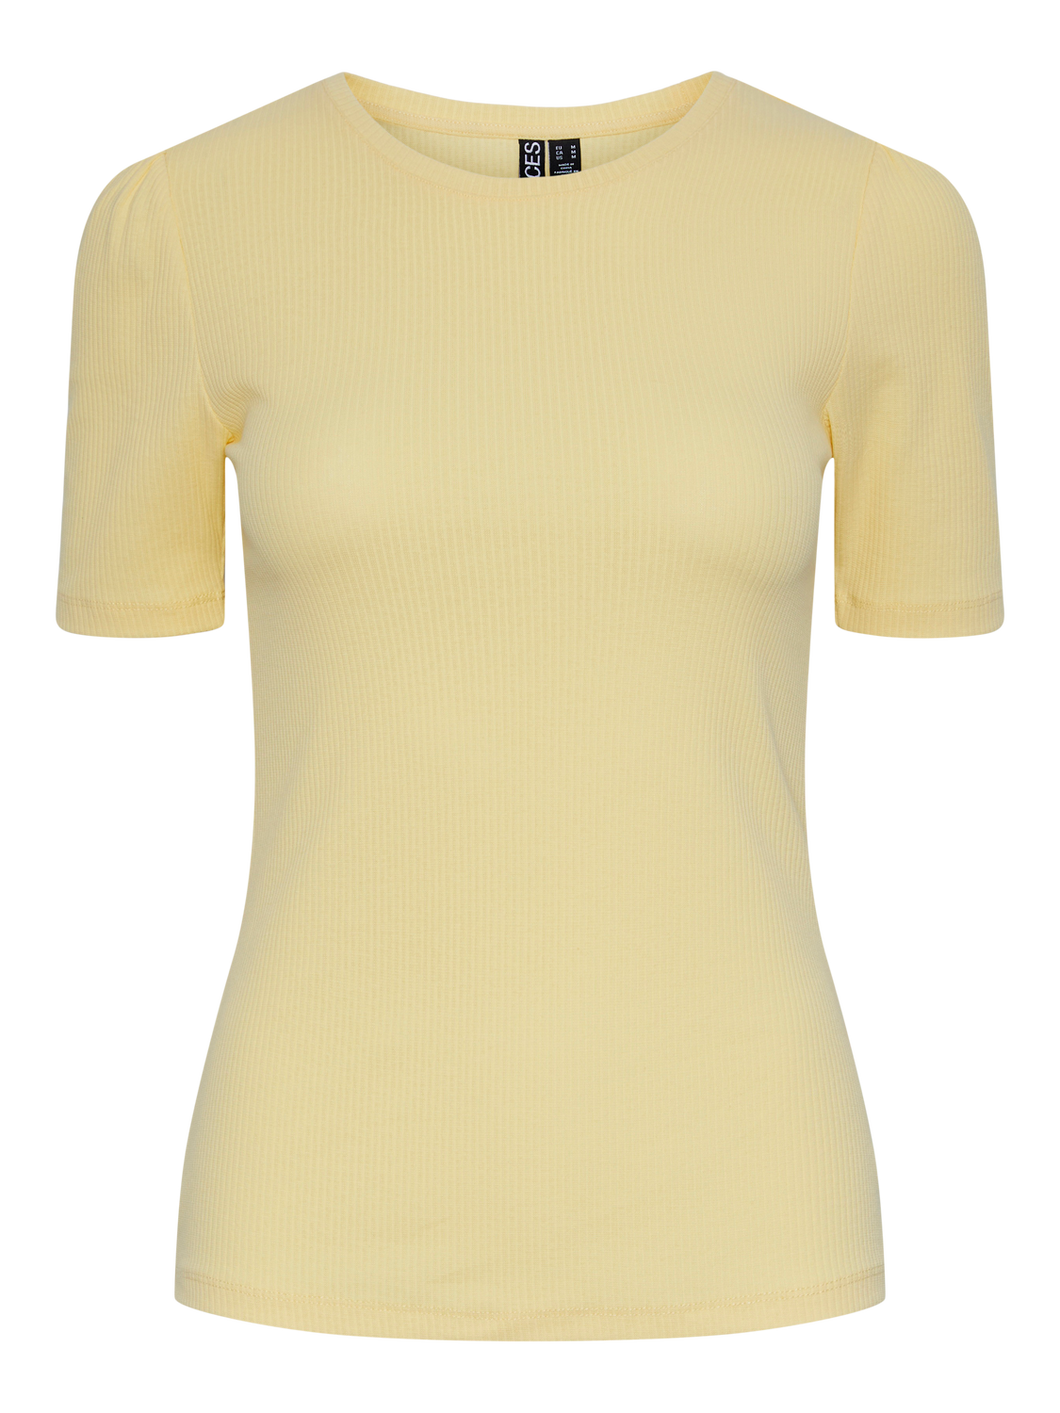 PCRUKA T-Shirt - Pale Banana